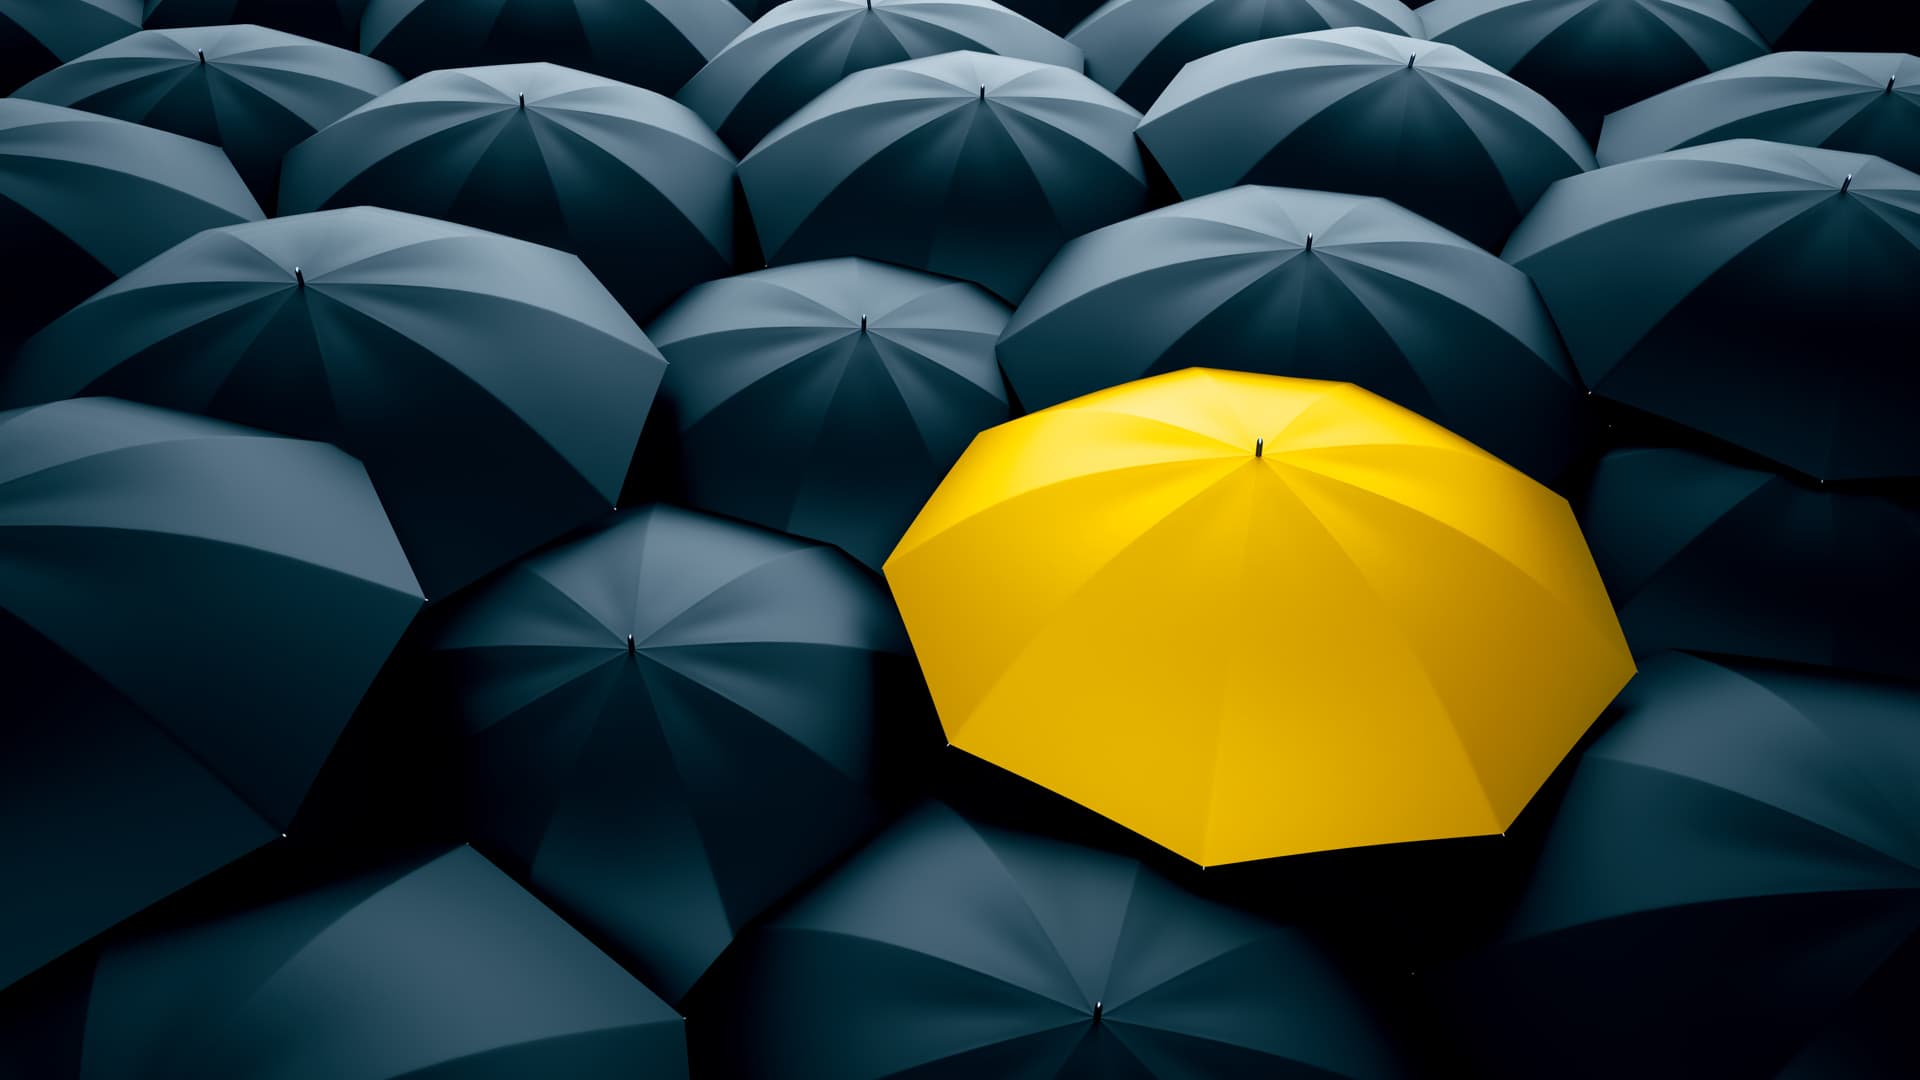 En illustration av flera utfällda paraplyer. Alla paraplyer är svarta förutom ett som är gult.